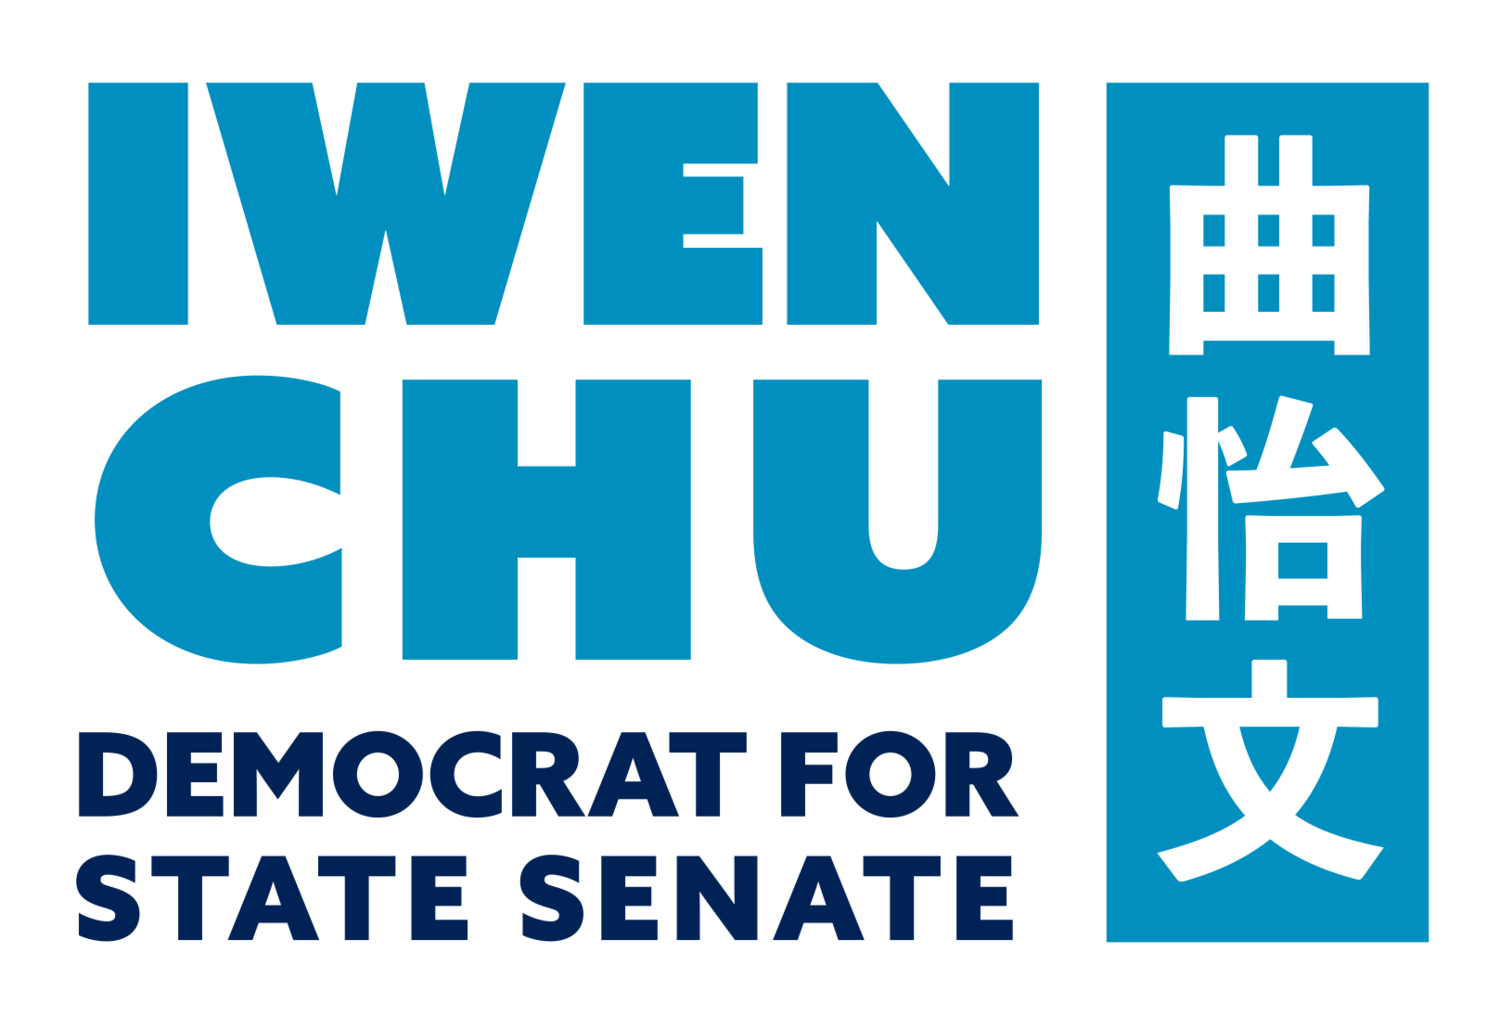 Iwen Chu for State Senate